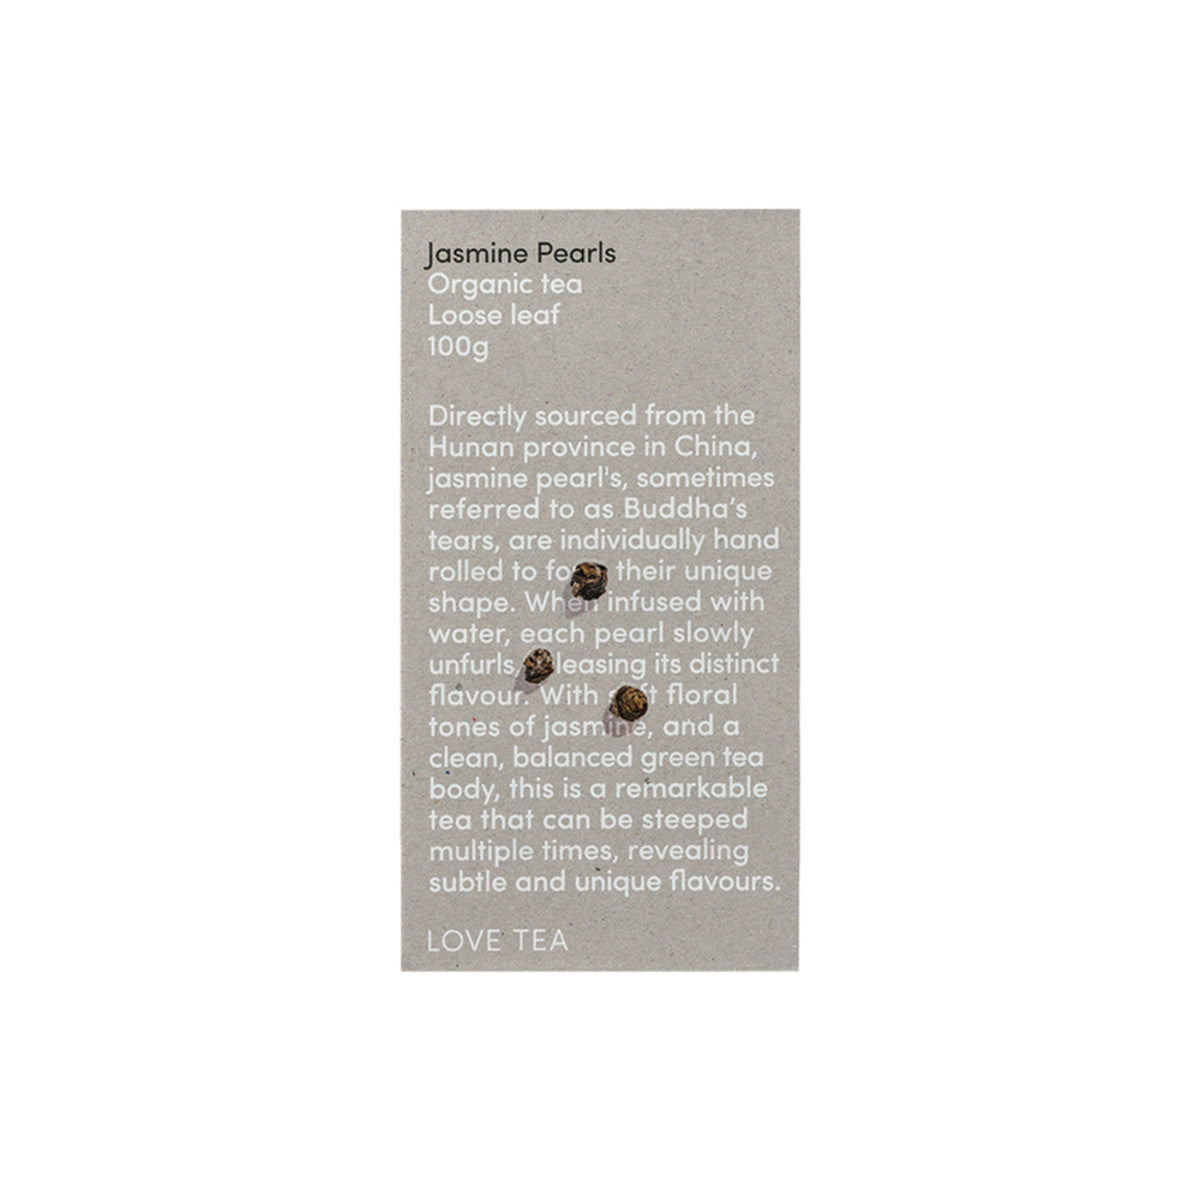 Organic Jasmine Pearls Tea Loose Leaf 100g